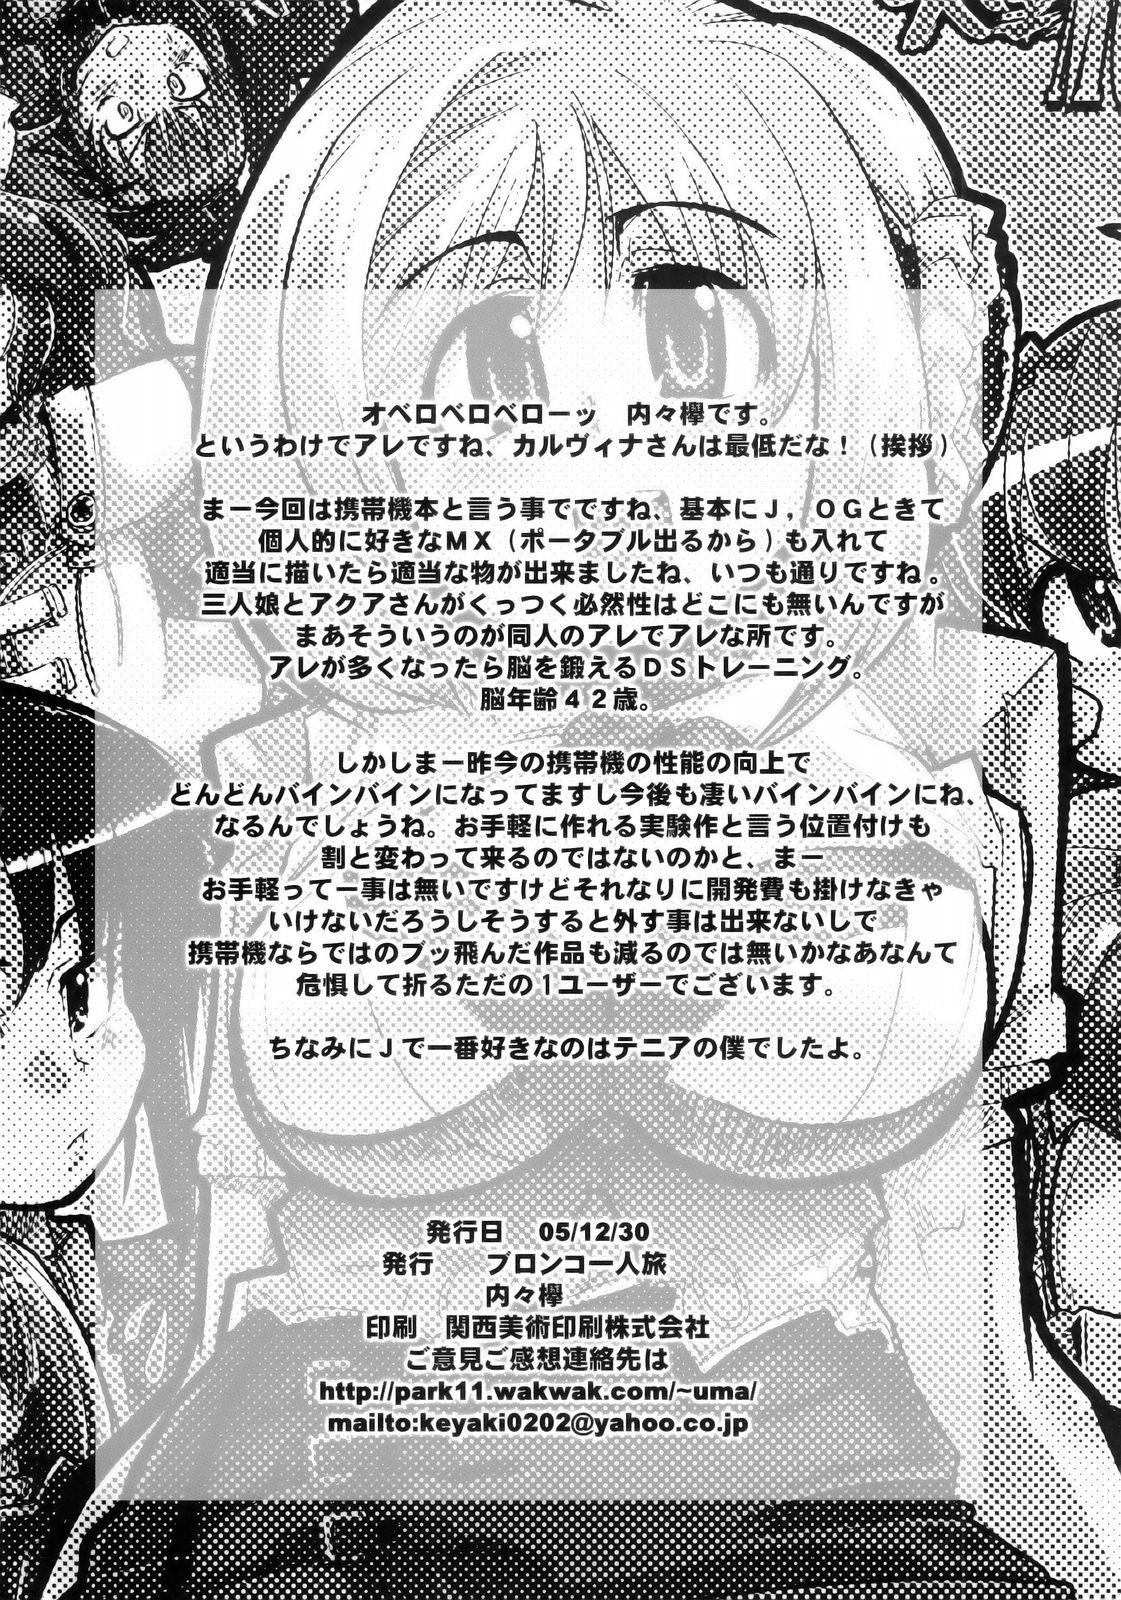 Bath Boku no Watashi no Super Bobobbo Taisen MGJOX - Super robot wars Cuck - Page 29